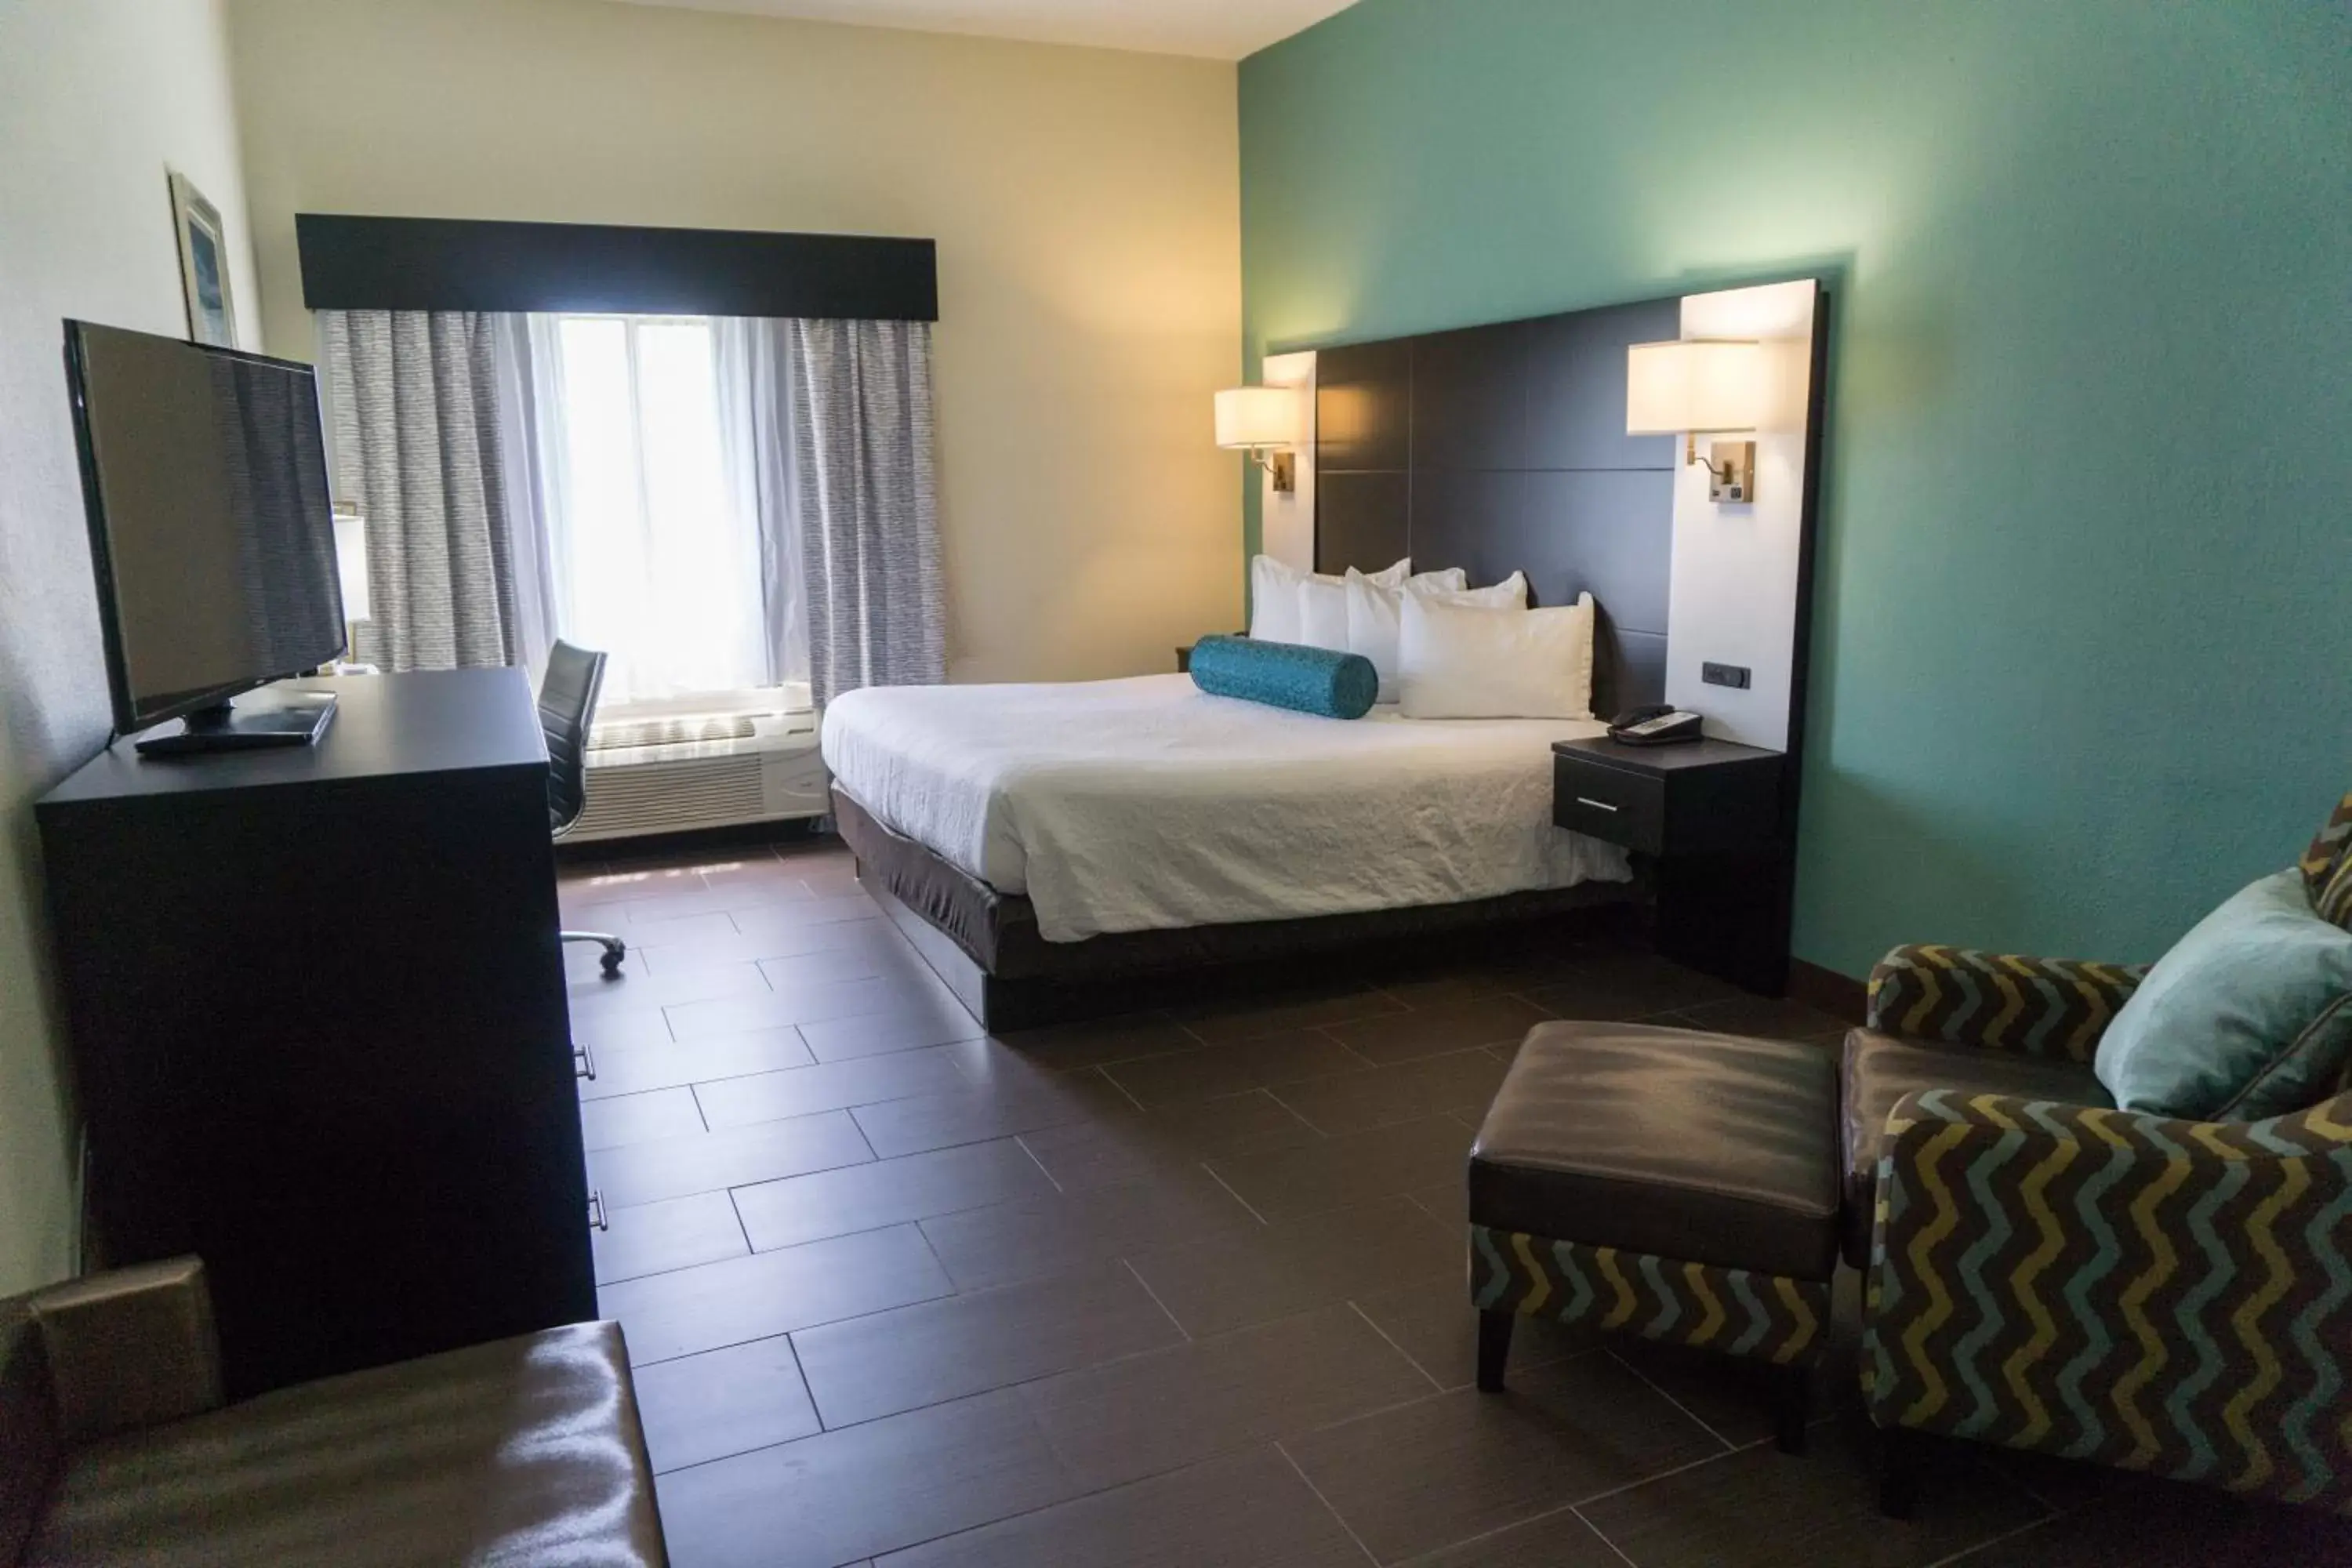 Bedroom, Room Photo in Best Western Mayport Inn and Suites